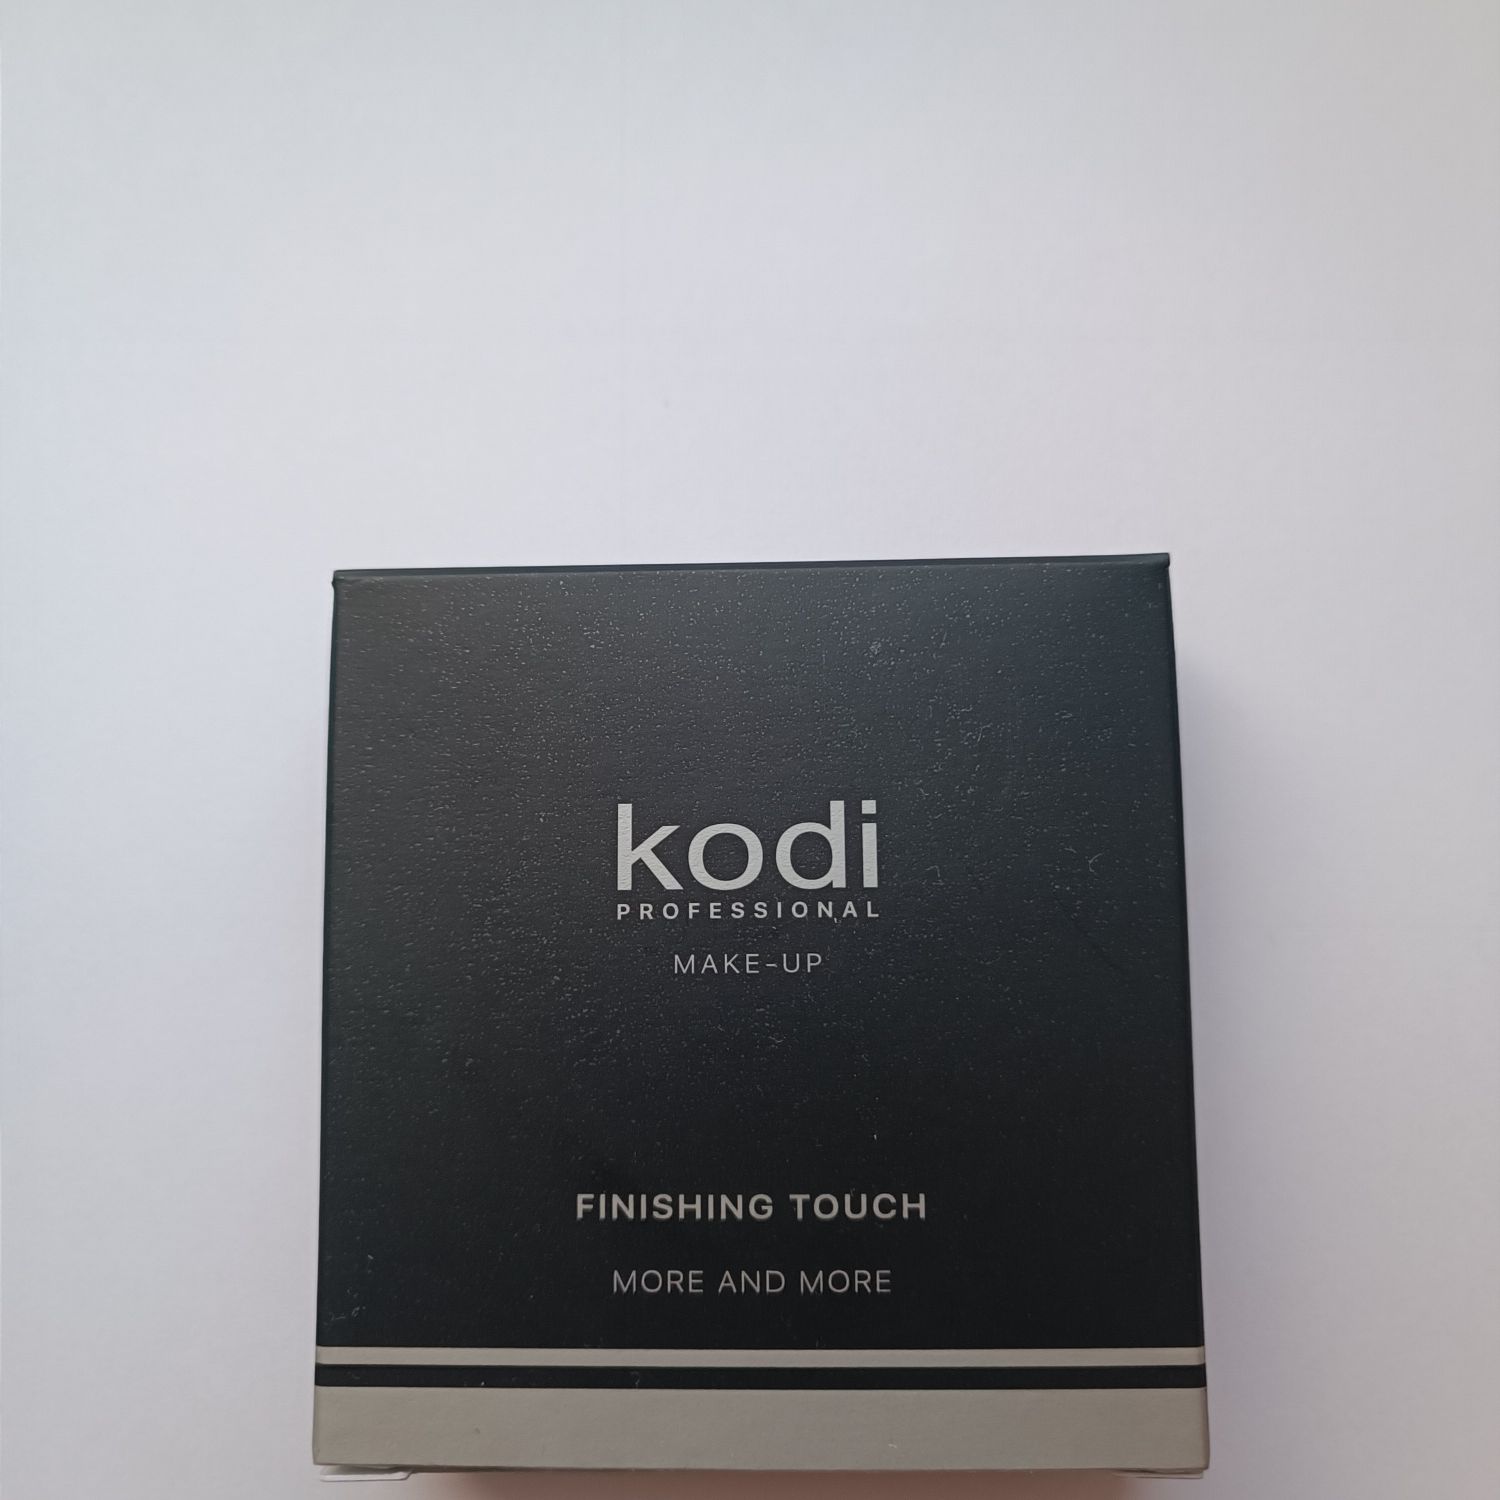 Пудра компактная Kodi, коди, пудра для лица